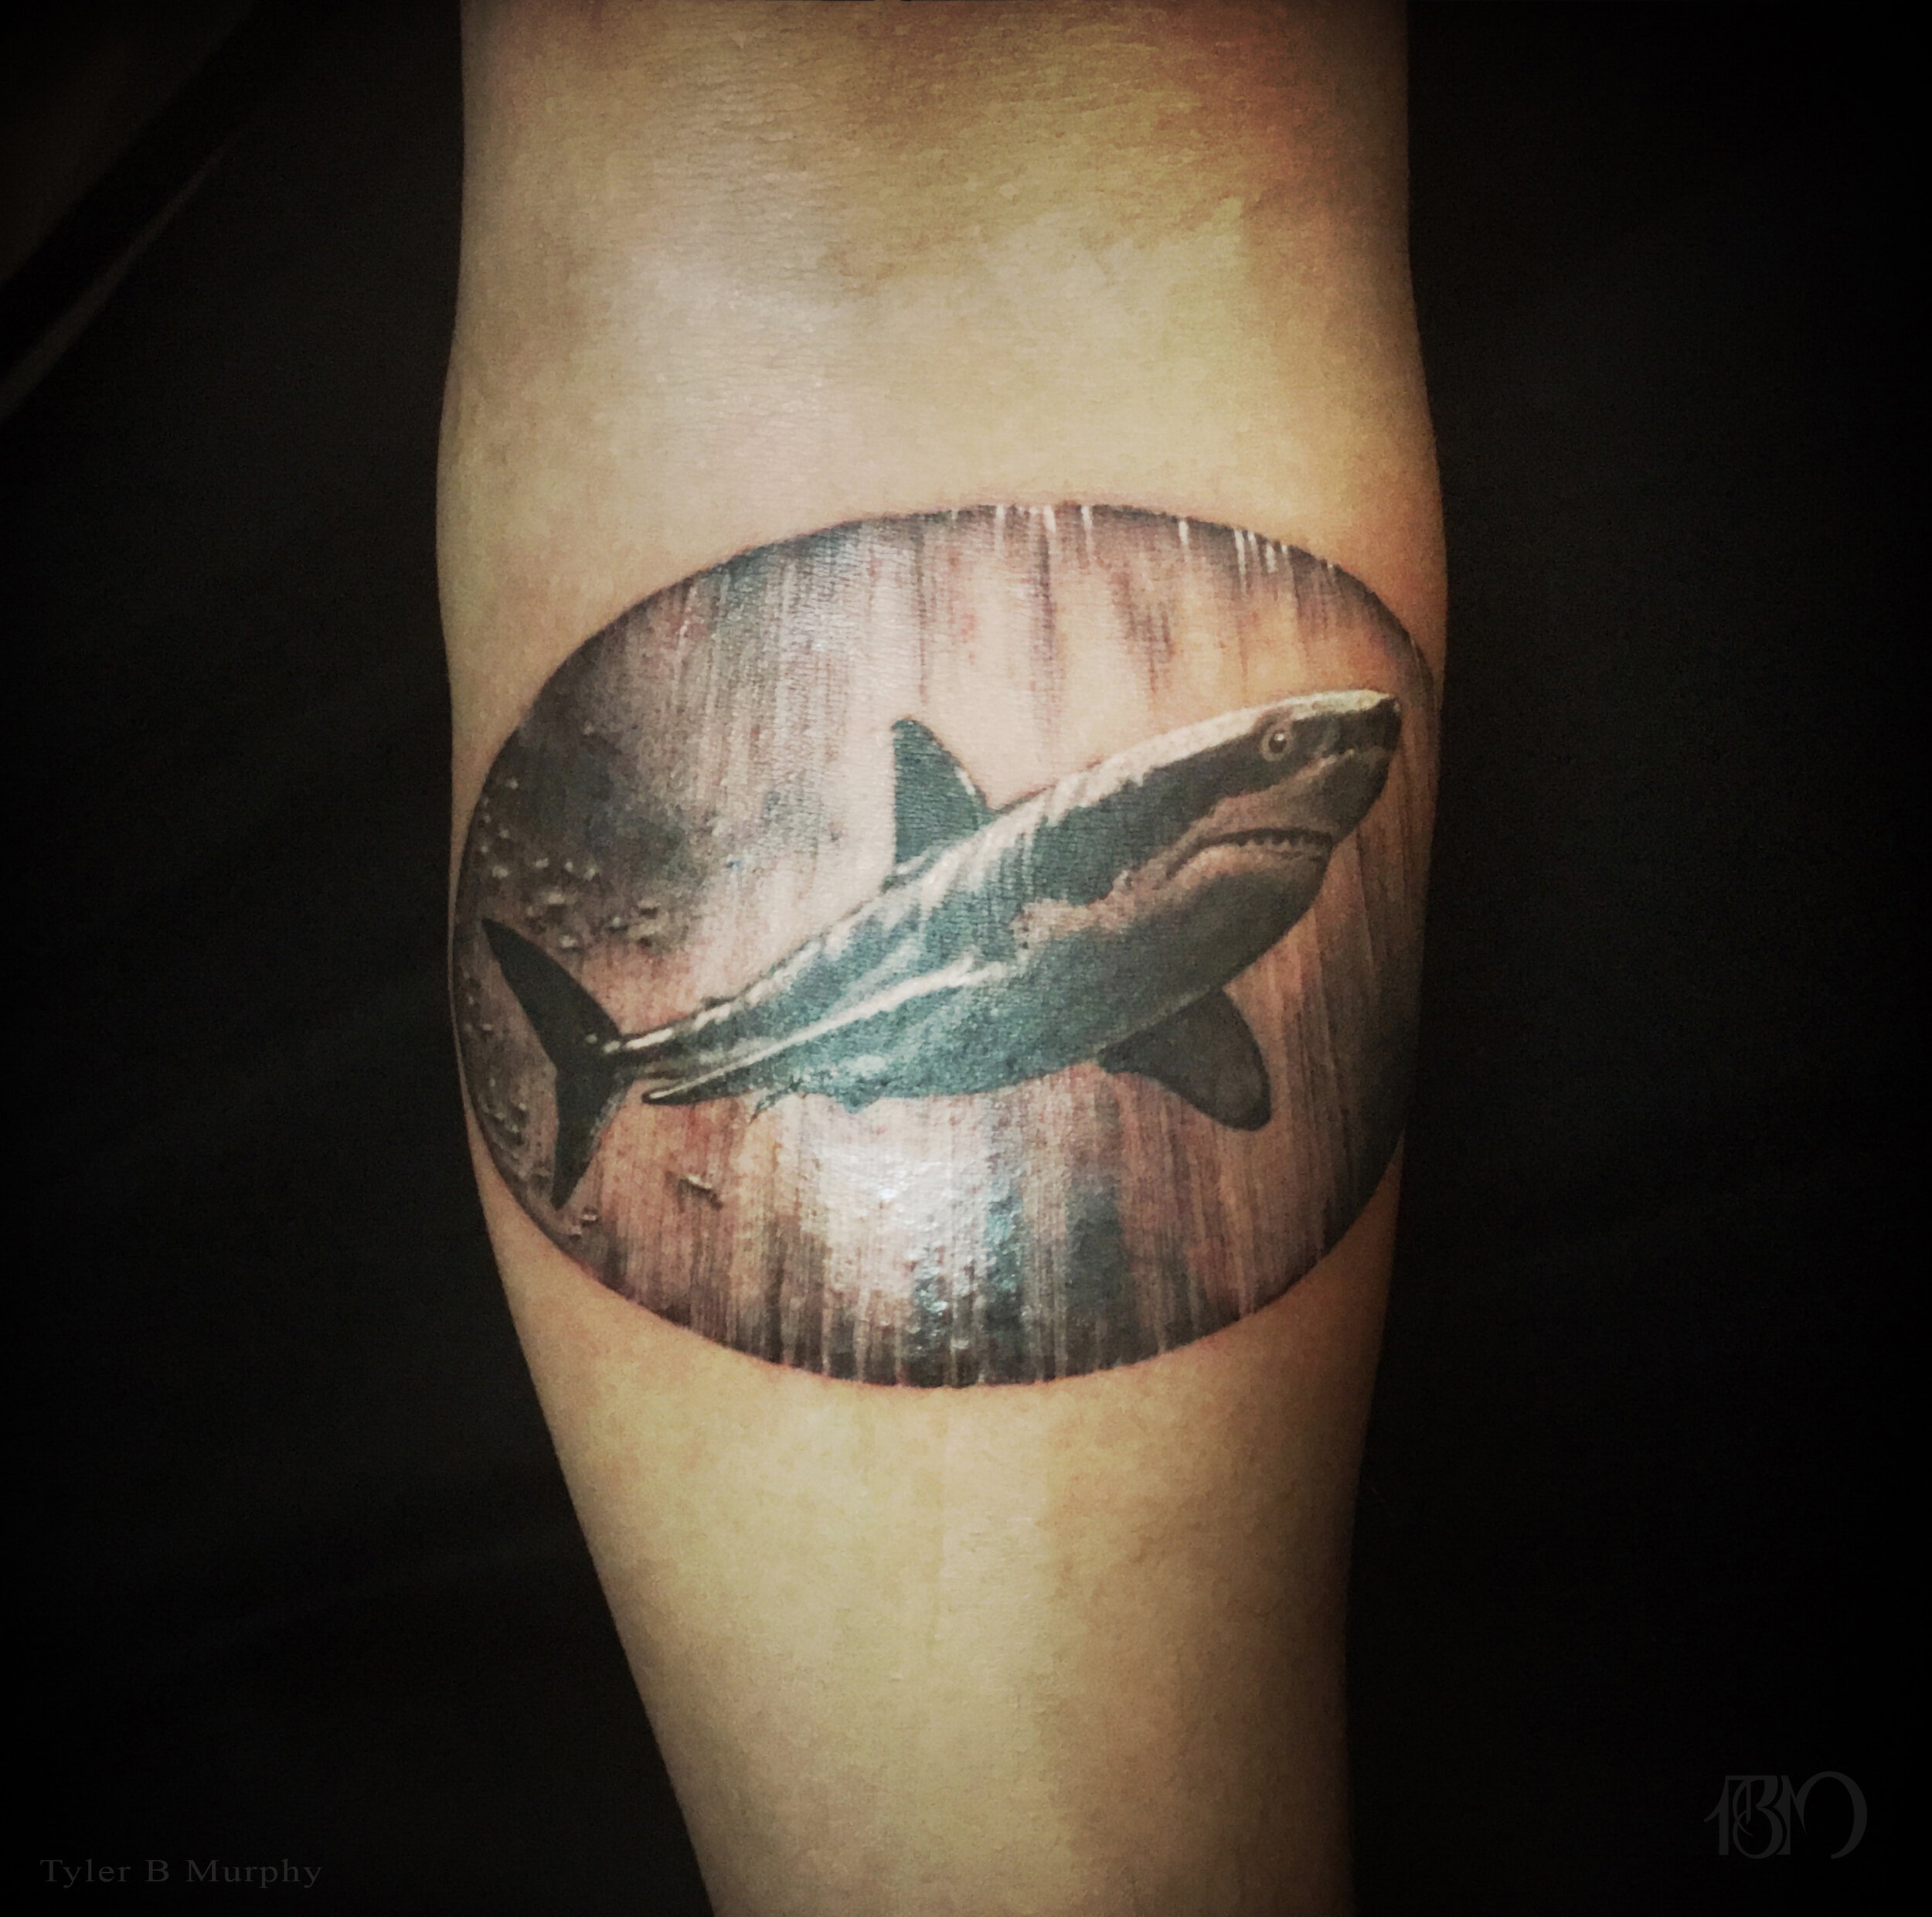 13a - Shark tattoo Tyler B Murphy copy.jpg